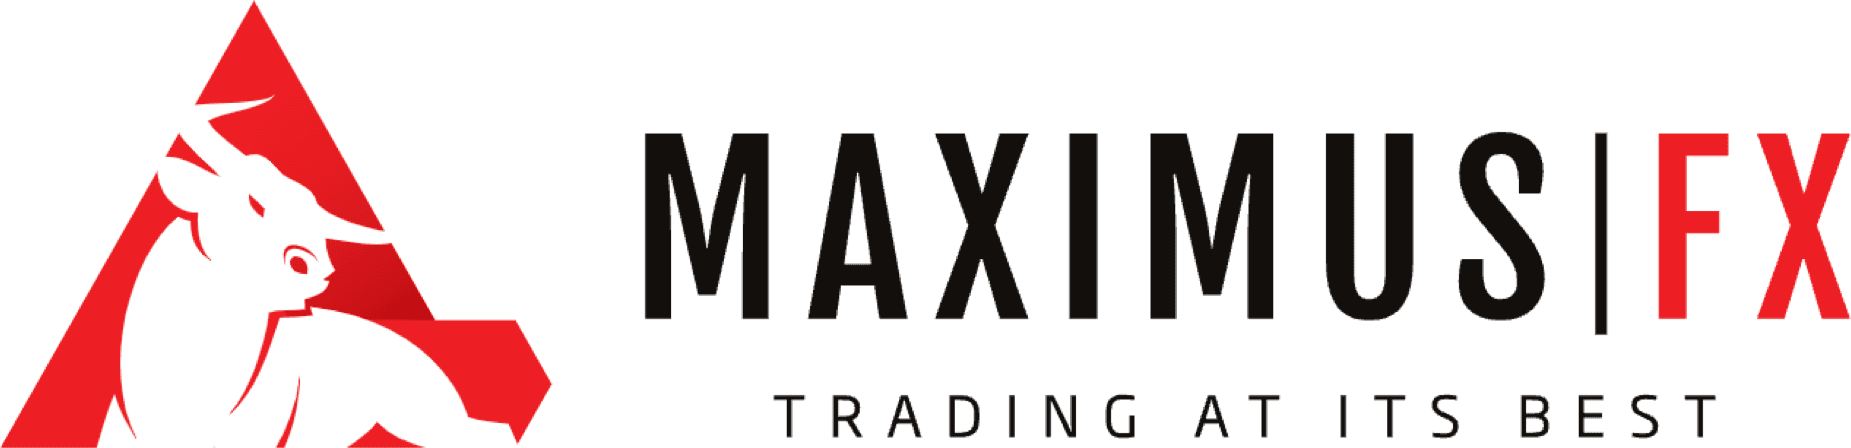 Maximus Markets